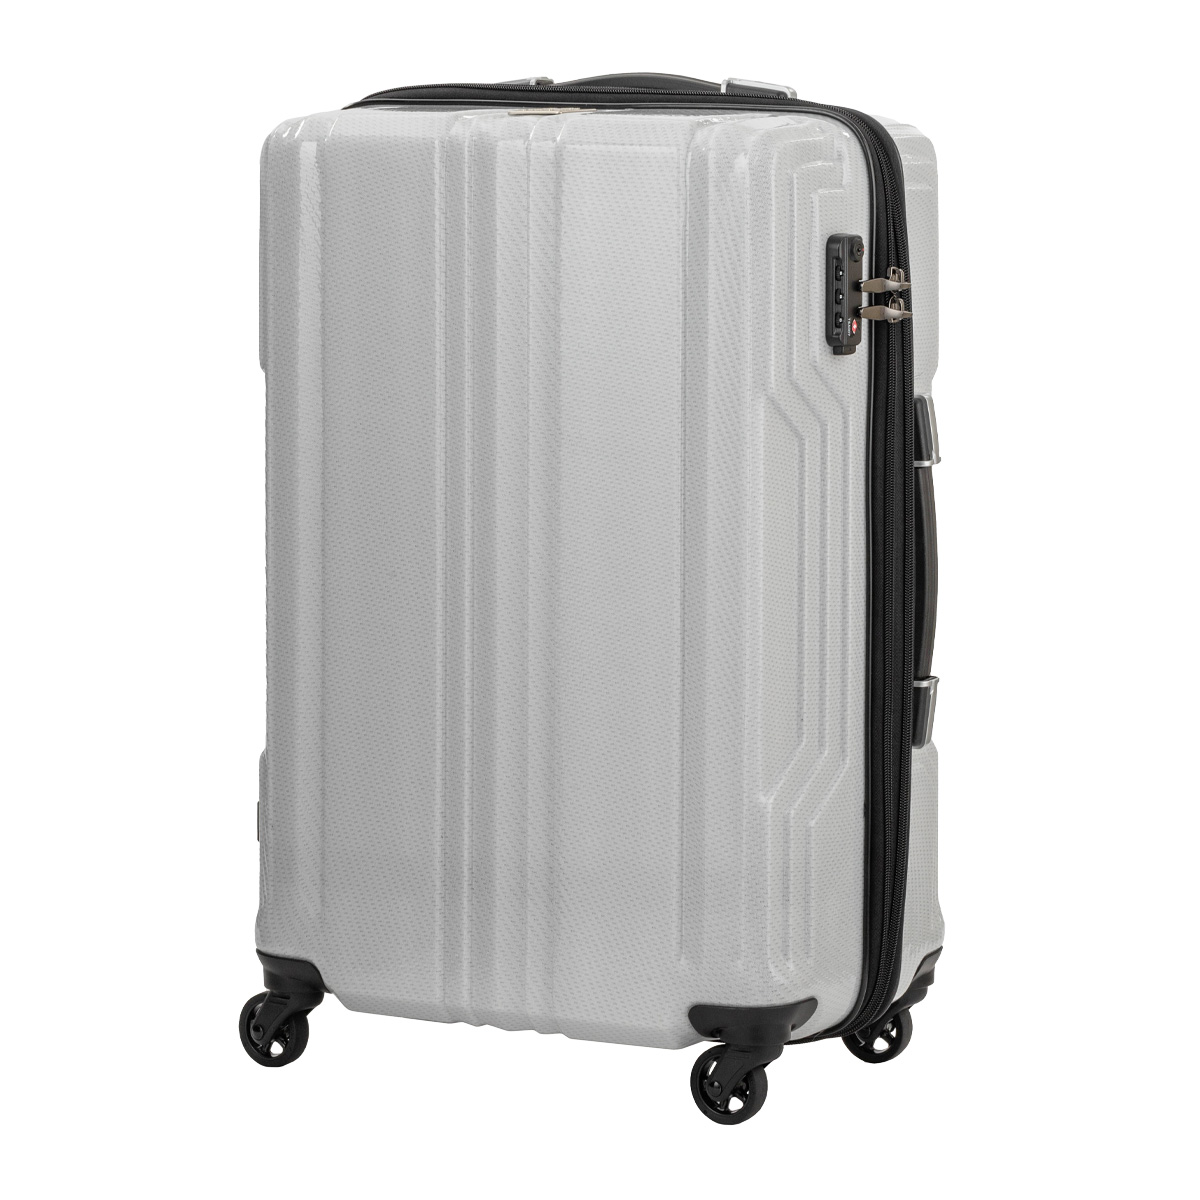 レジェンドウォーカー スーツケース 機内持ち込み 35L 48cm 2kg ブレイド 超軽量PCファイバー 5604-48 LEGENDWALKER  キャリーケース キャリーバッグ 1年保証